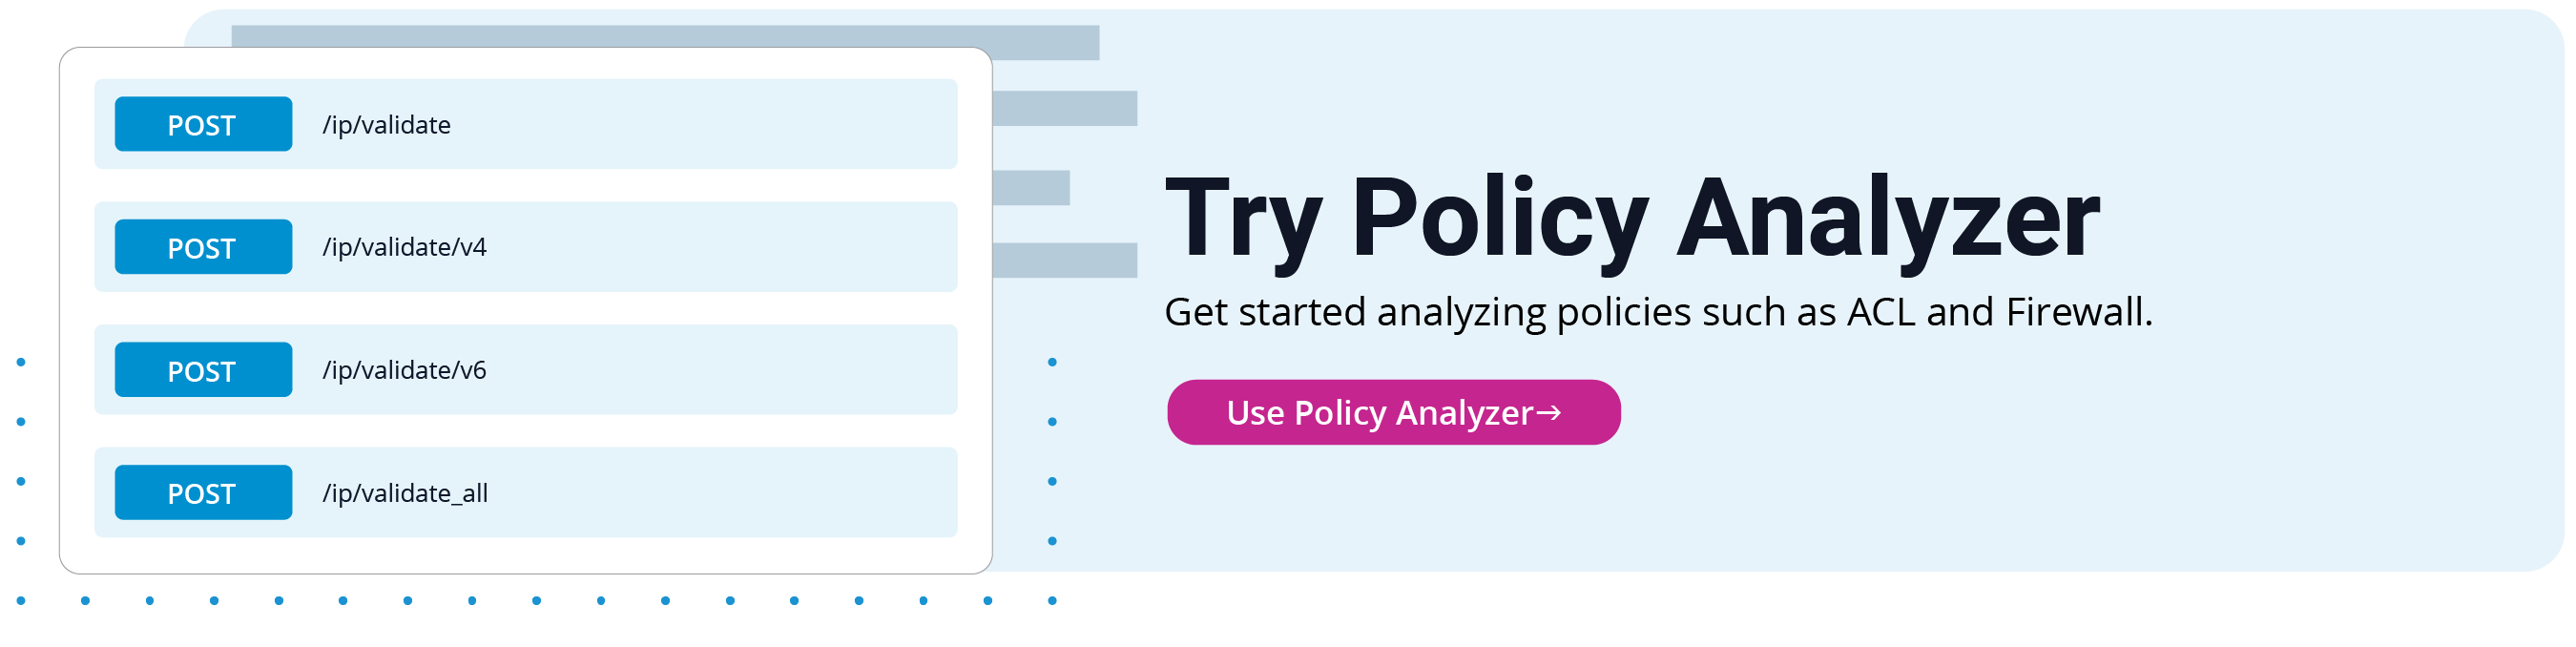 Try Policy Analyzer